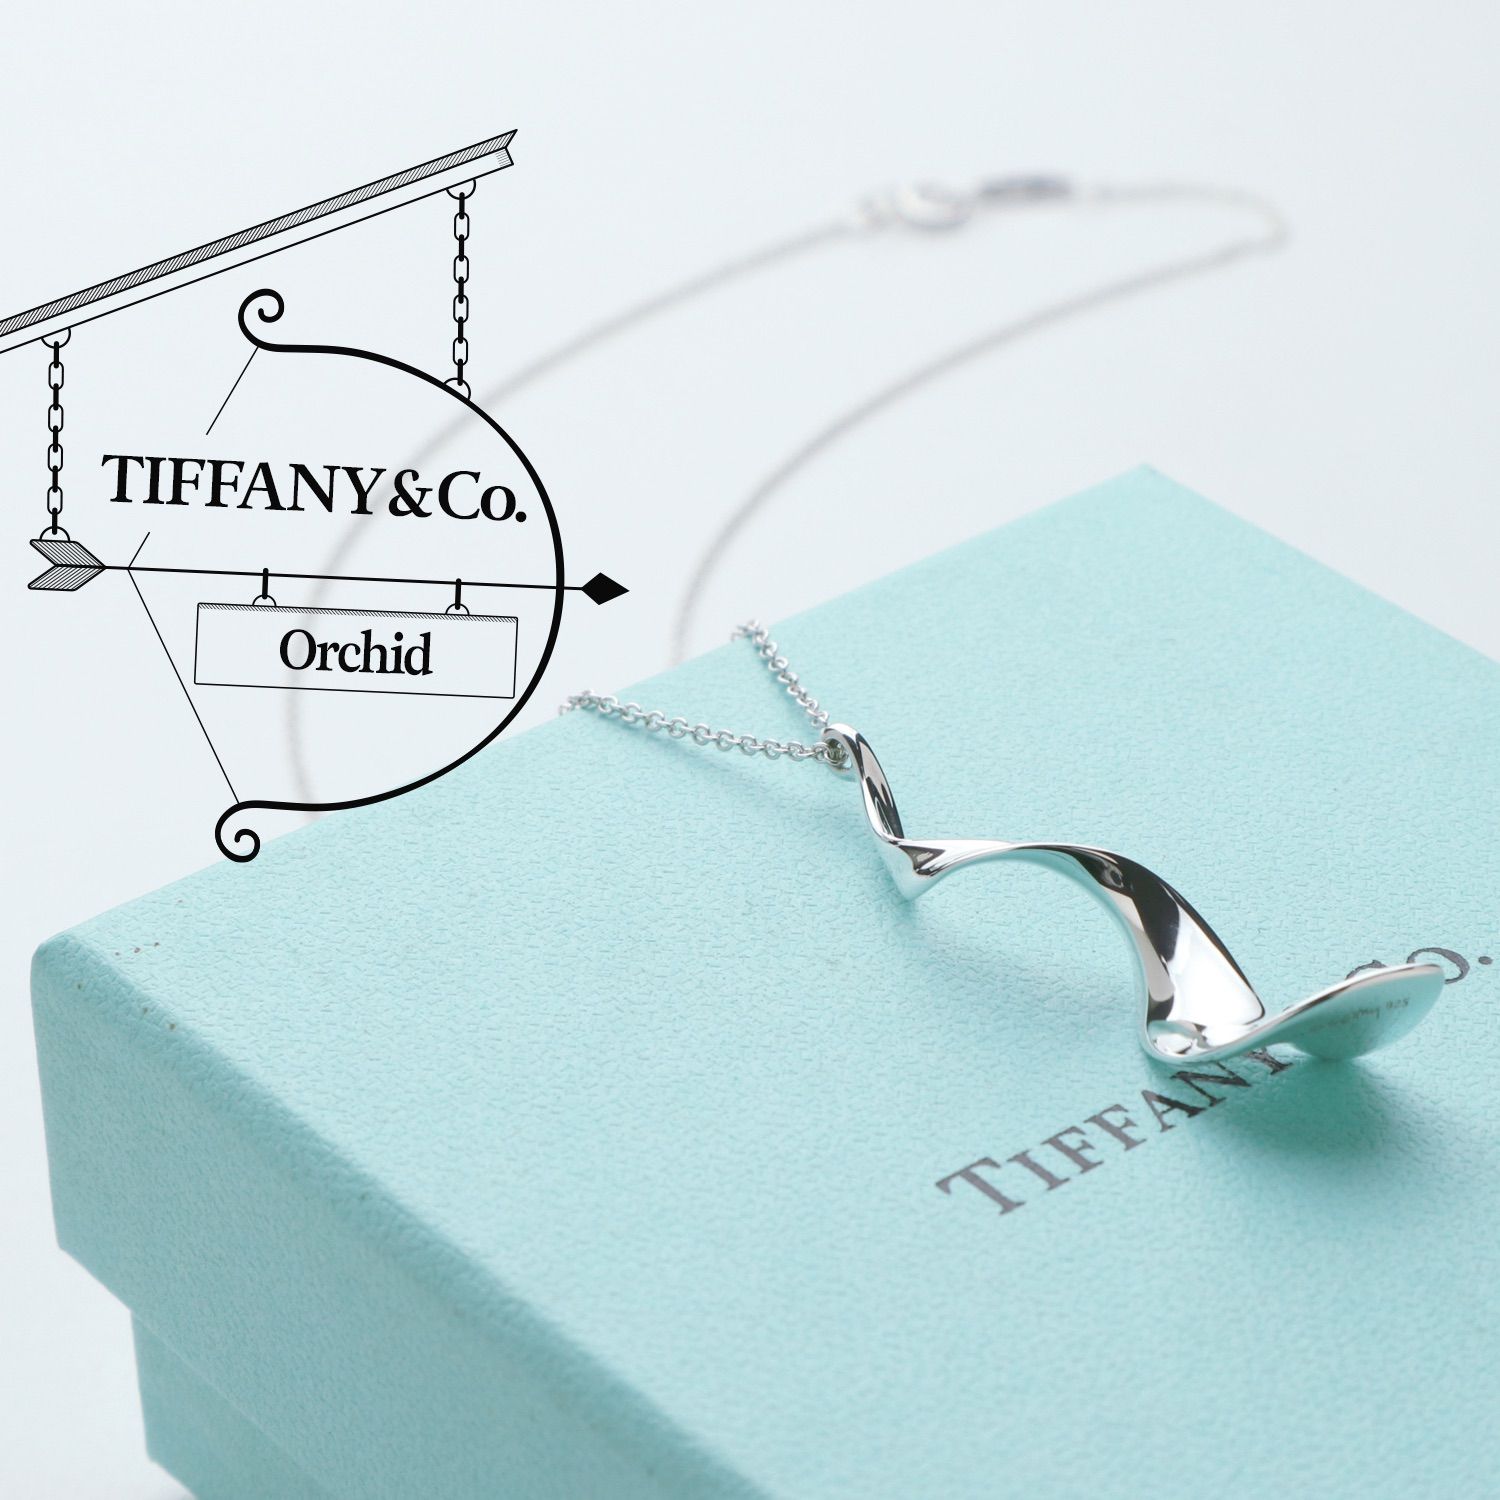 Tiffany＆Co. ティファニーフランク ゲーリー オーキッド ネックレス